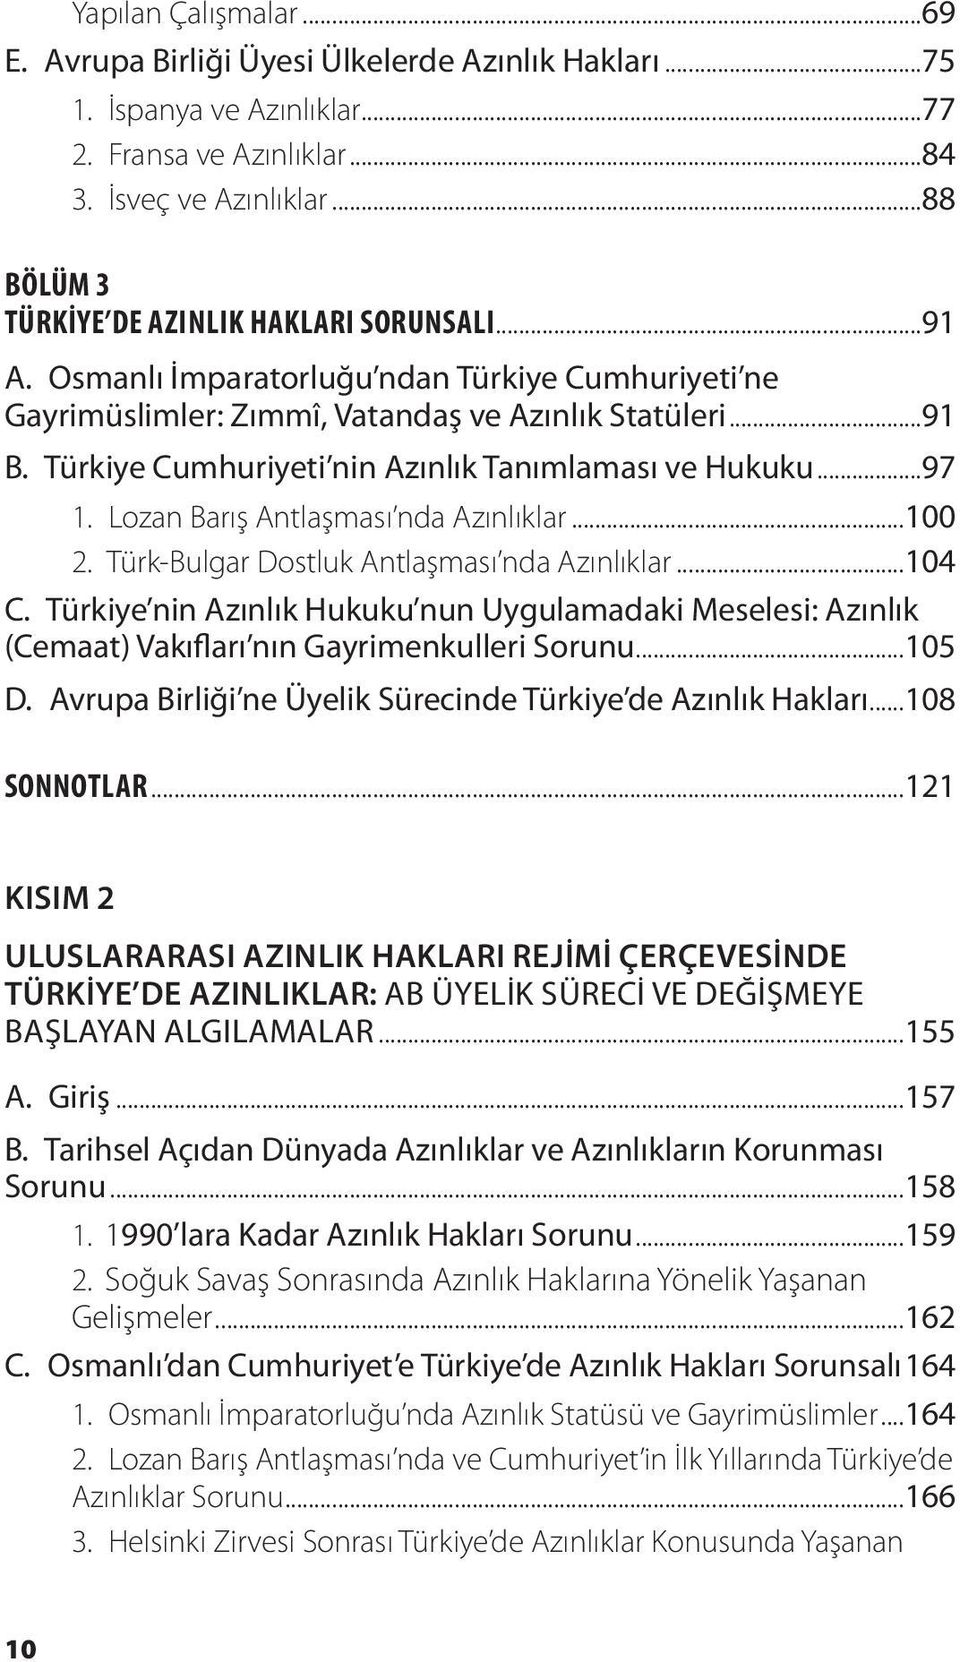 Türkiye Cumhuriyeti nin Azınlık Tanımlaması ve Hukuku...97 1. Lozan Barış Antlaşması nda Azınlıklar...100 2. Türk-Bulgar Dostluk Antlaşması nda Azınlıklar...104 C.